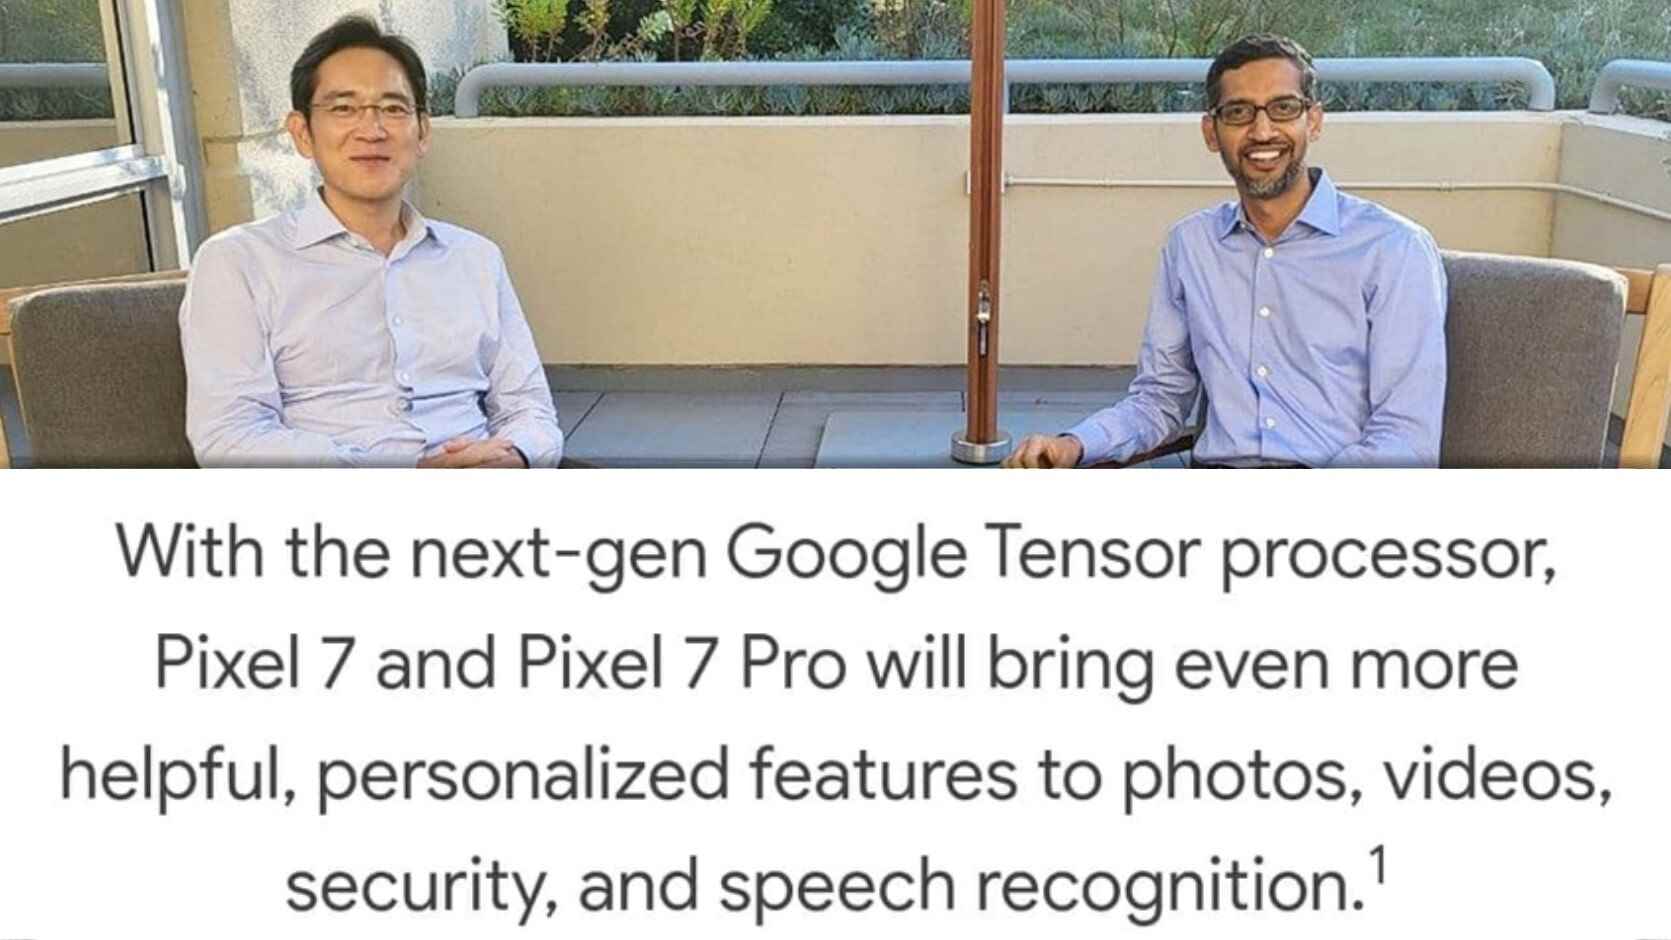 Tensor G2, AI yetenekleri sayesinde özel bir çip olacak.  Peki ya ham güç?  - Pixel 7 ve Tensor G2 - Qualcomm'u Samsung ile kucaklaşmaya bırakmak - Google'ın en büyük hatası mı?